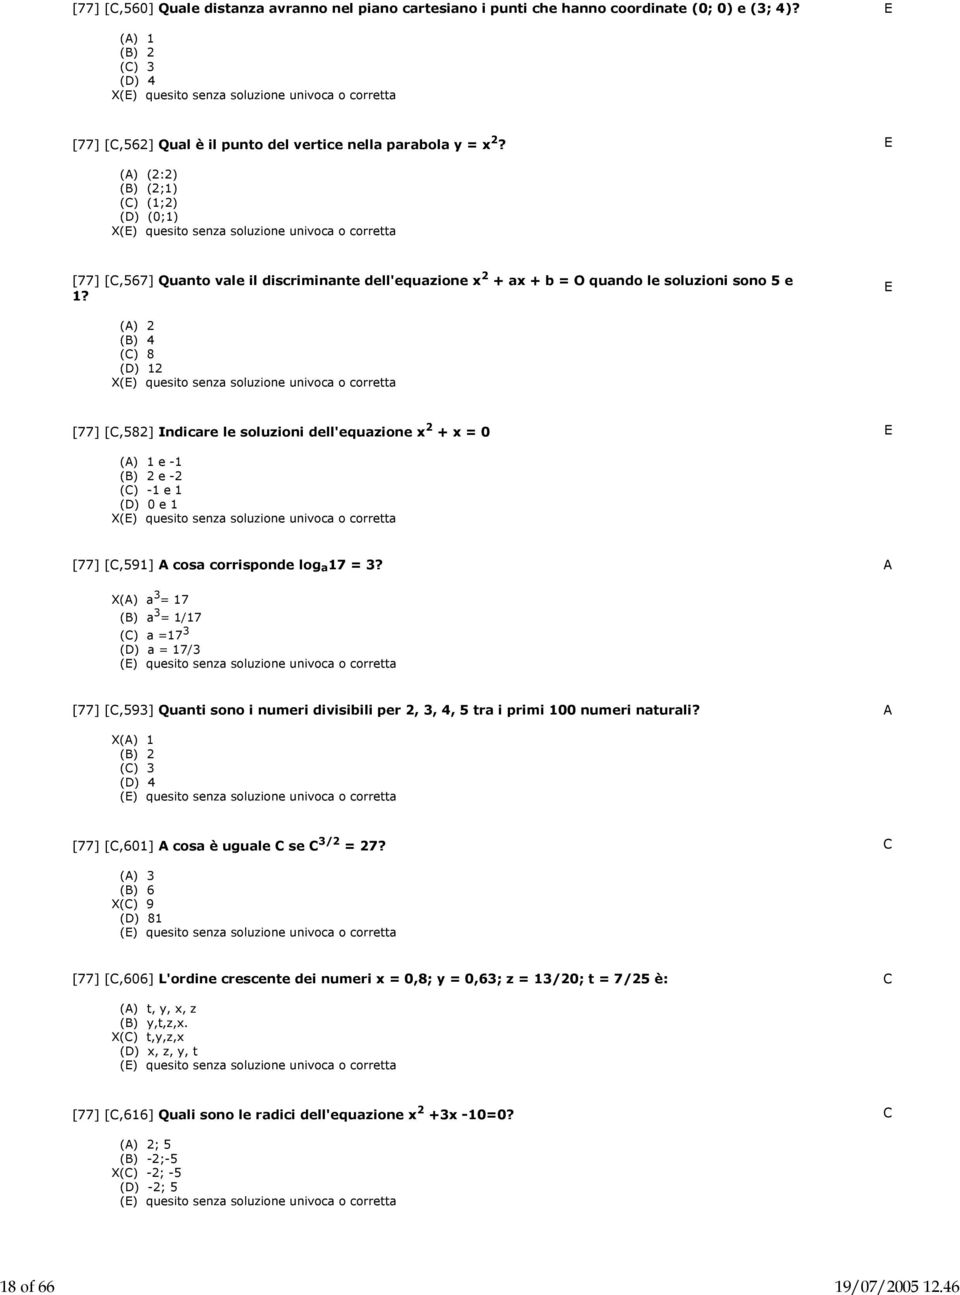 E () 2 (B) 4 (C) 8 (D) 12 X [77] [C,582] Indicare le soluzioni dell'equazione x 2 + x = 0 E () 1 e -1 (B) 2 e -2 (C) -1 e 1 (D) 0 e 1 X [77] [C,591] cosa corrisponde log a 17 = 3?